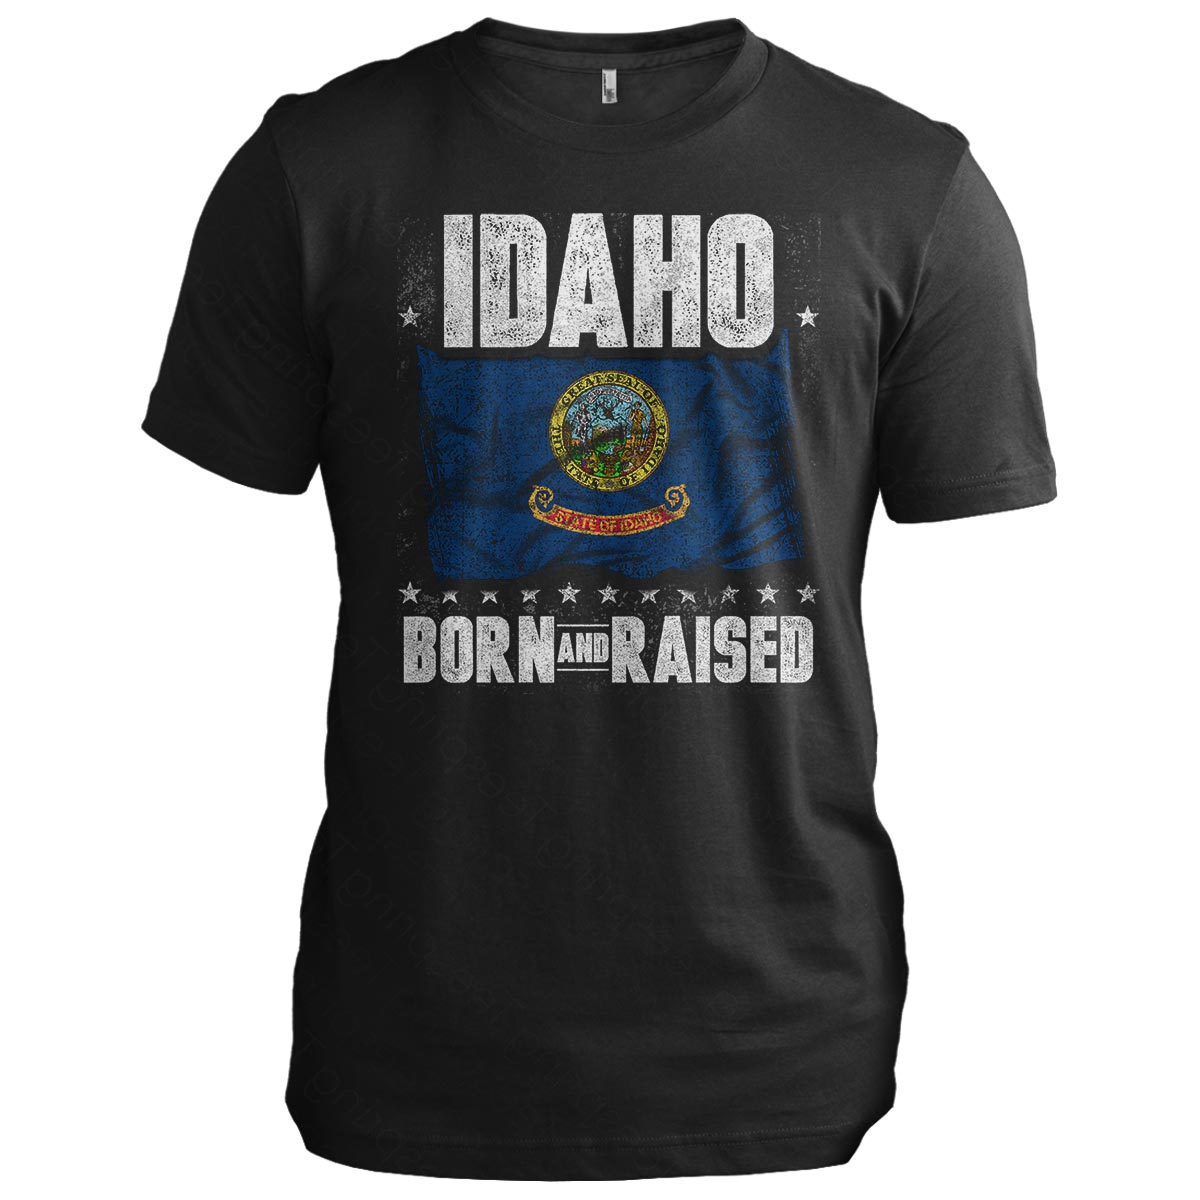 Idaho: Born and Raised